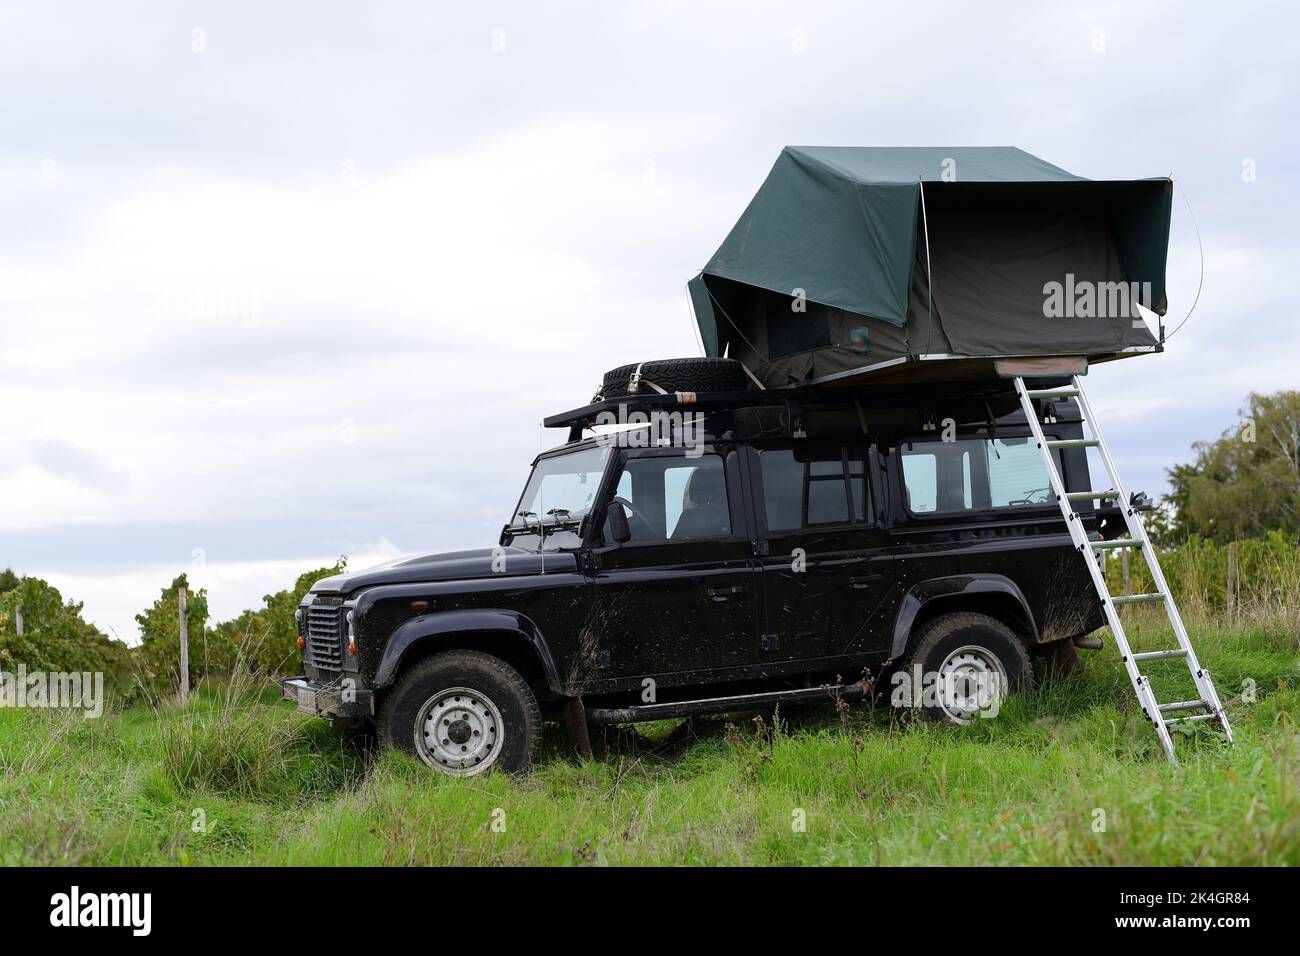 Offroad-Van auf einem Feld mit Zelt auf dem Dach geparkt. Stockfoto